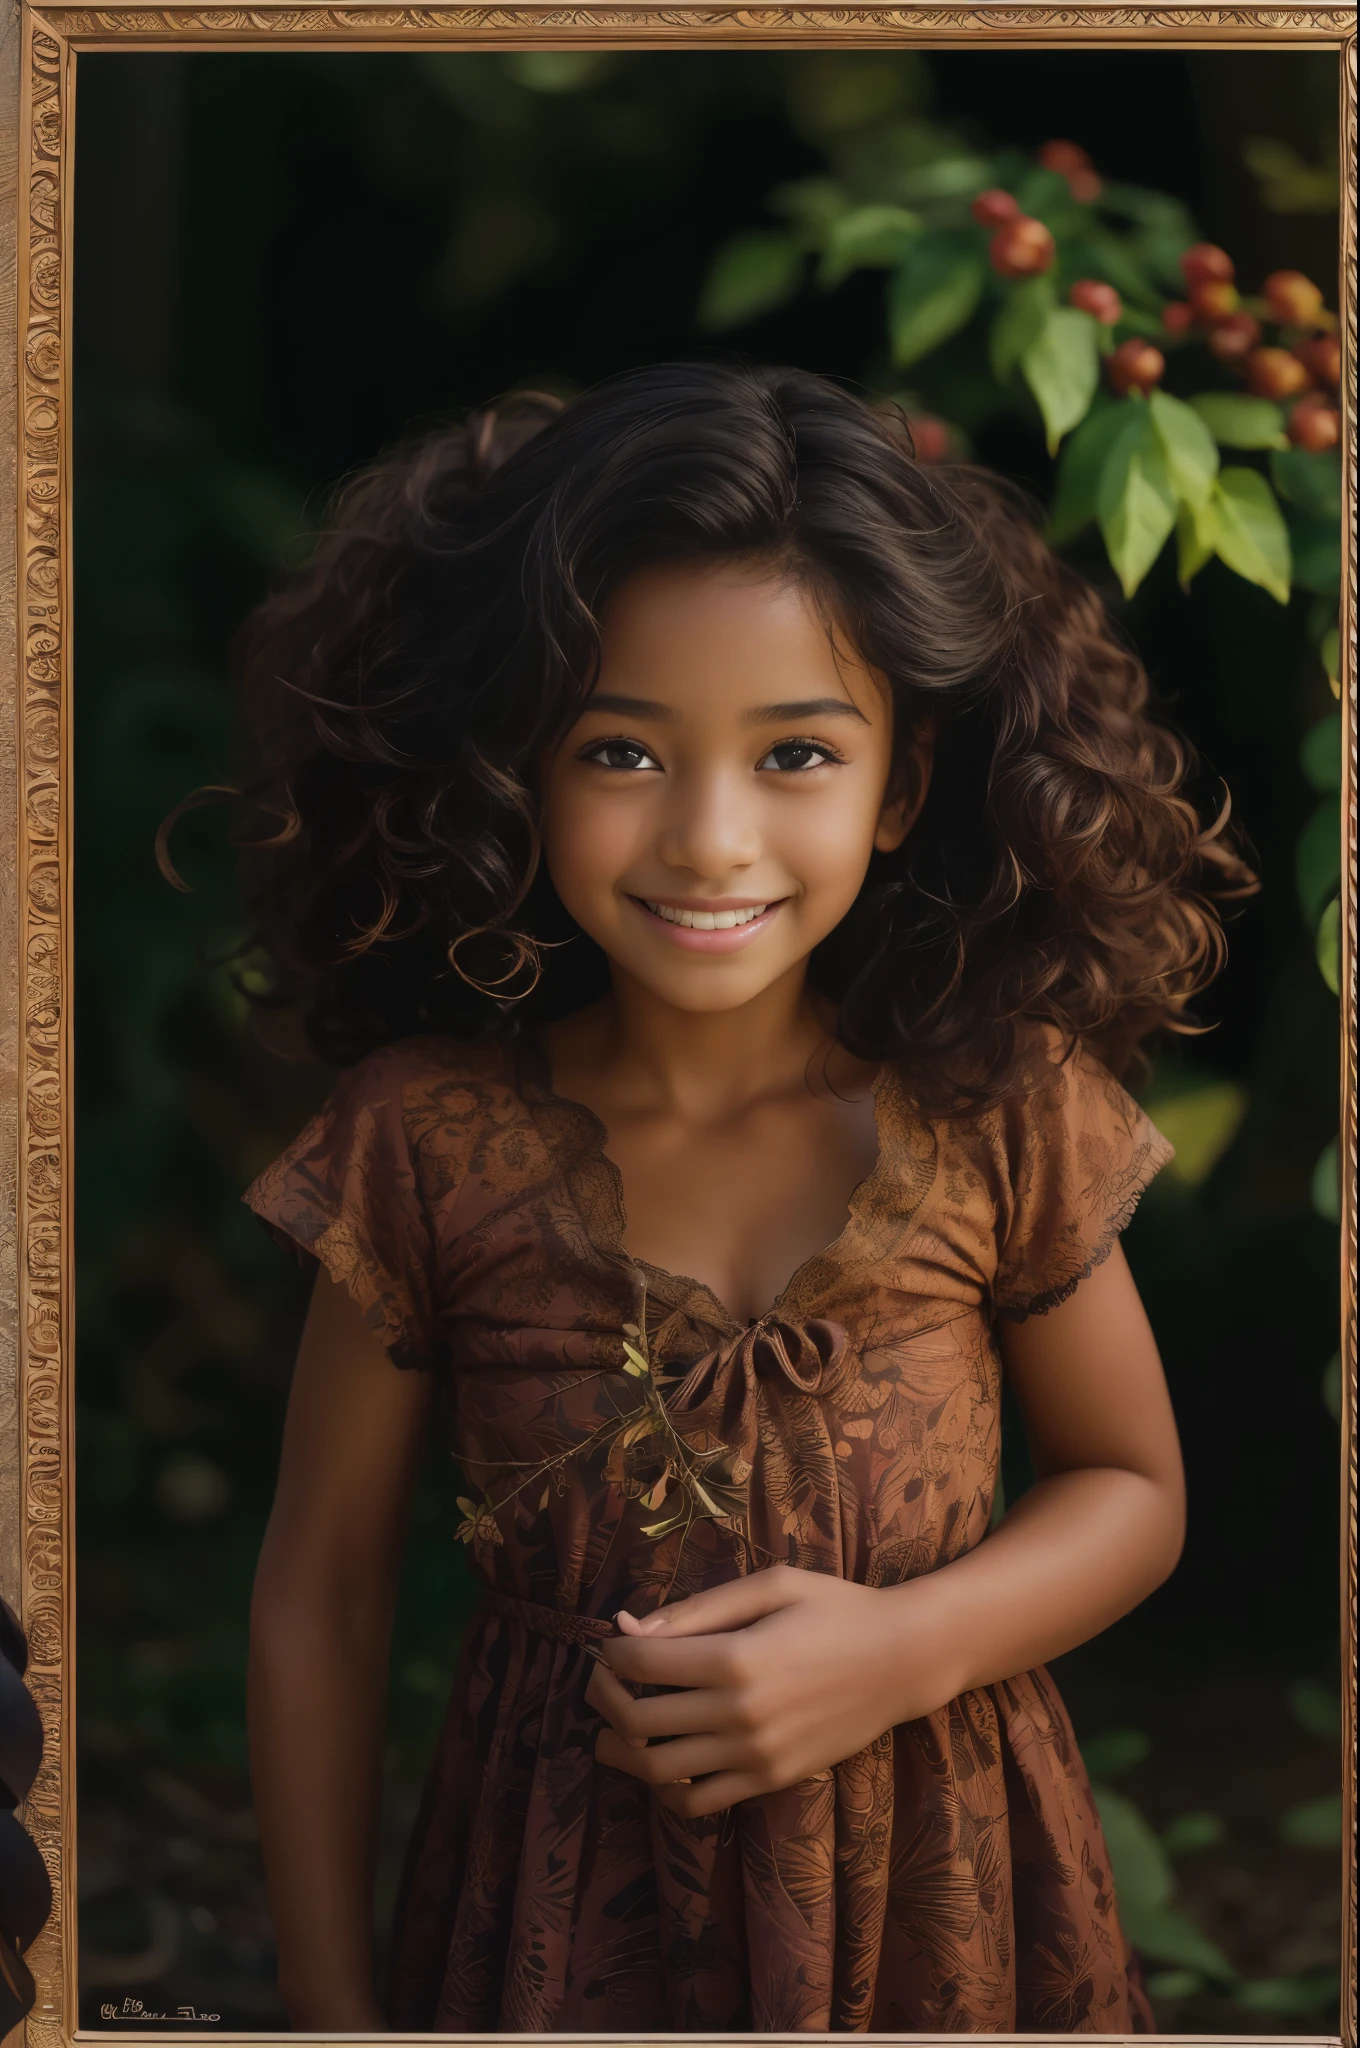 (Porträt, redaktionelles Foto eines schönen schwarzen Mädchens im Alter von 4, bezauberndes Gesicht, langes braunes lockiges Haar, ((haselnussbraune Augen)), nikon d850, Film-Stockfoto ,4 kodak portra 400 ,Kamera f1.6 lens ,Satte Farben ,hyperrealistisch ,lebensechte Textur, dramatische Beleuchtung, (Sehr detailliertes Gesicht:1.4), perfekte Augen, realistische Iris, perfekte Zähne, (lächeln:0.7), (Hintergrund dunkel, Schatten der Blätter), (Dekollete)
